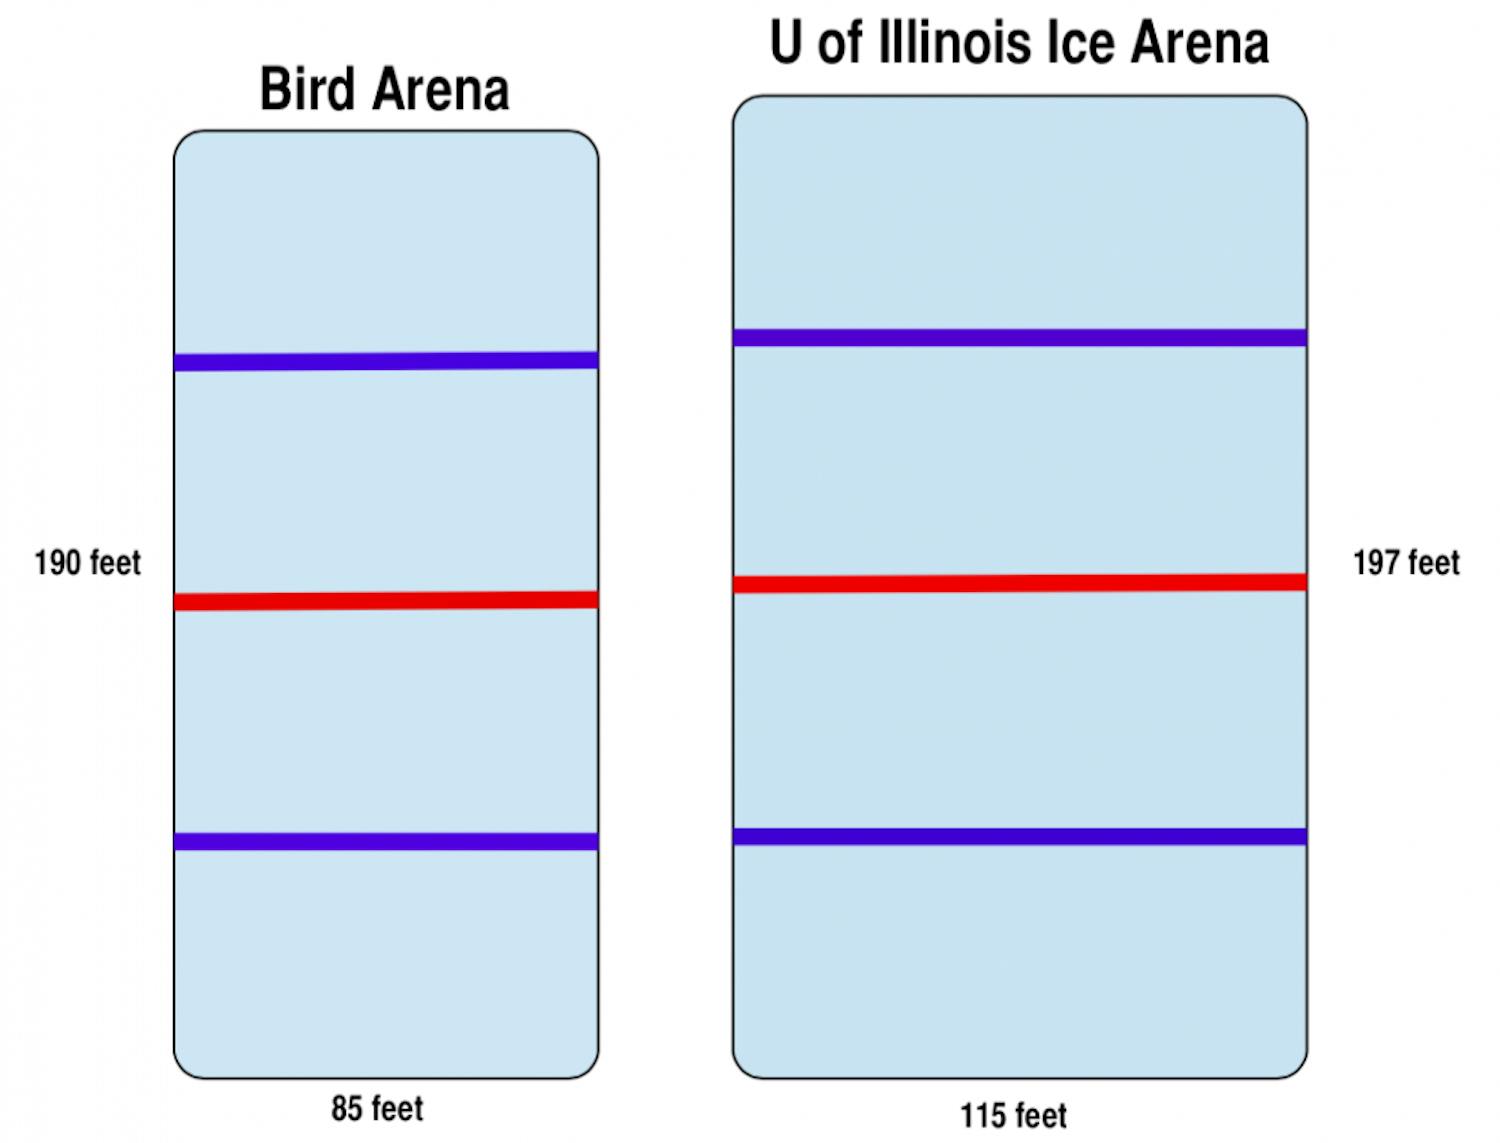 Bird Arena vs. University of Illinois Ice Arena  